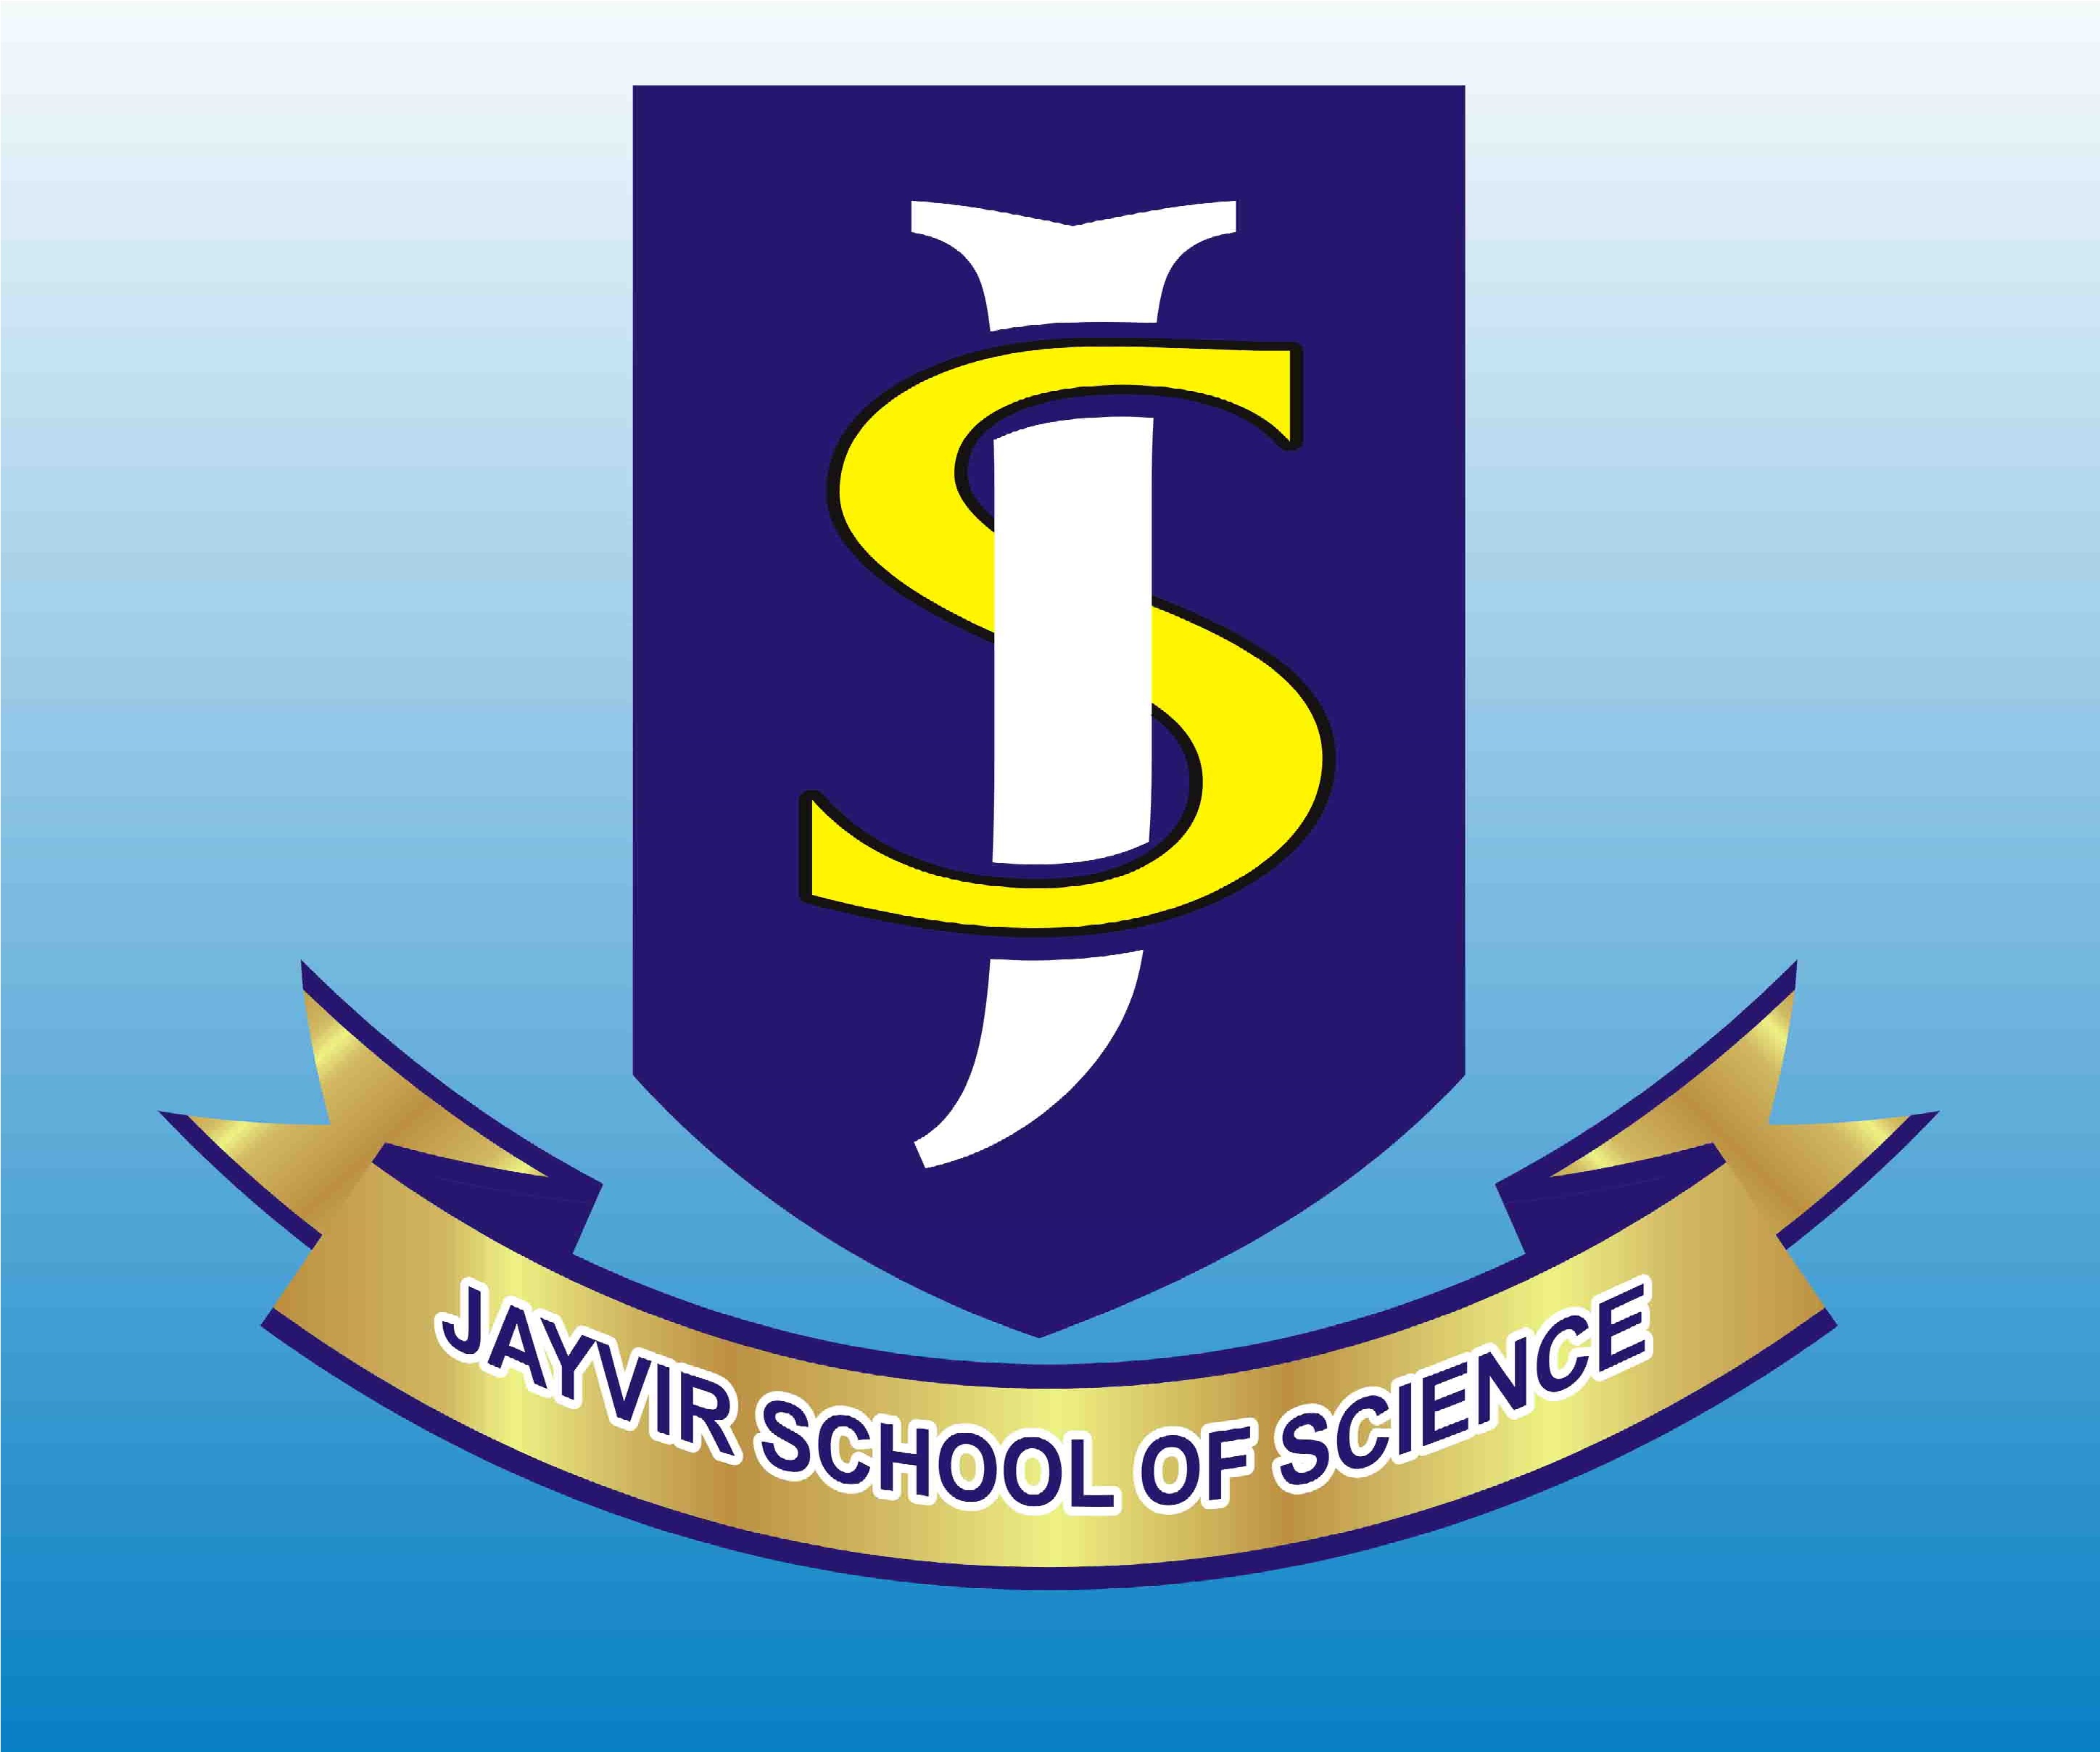 Jayvir School Of Science - Logo